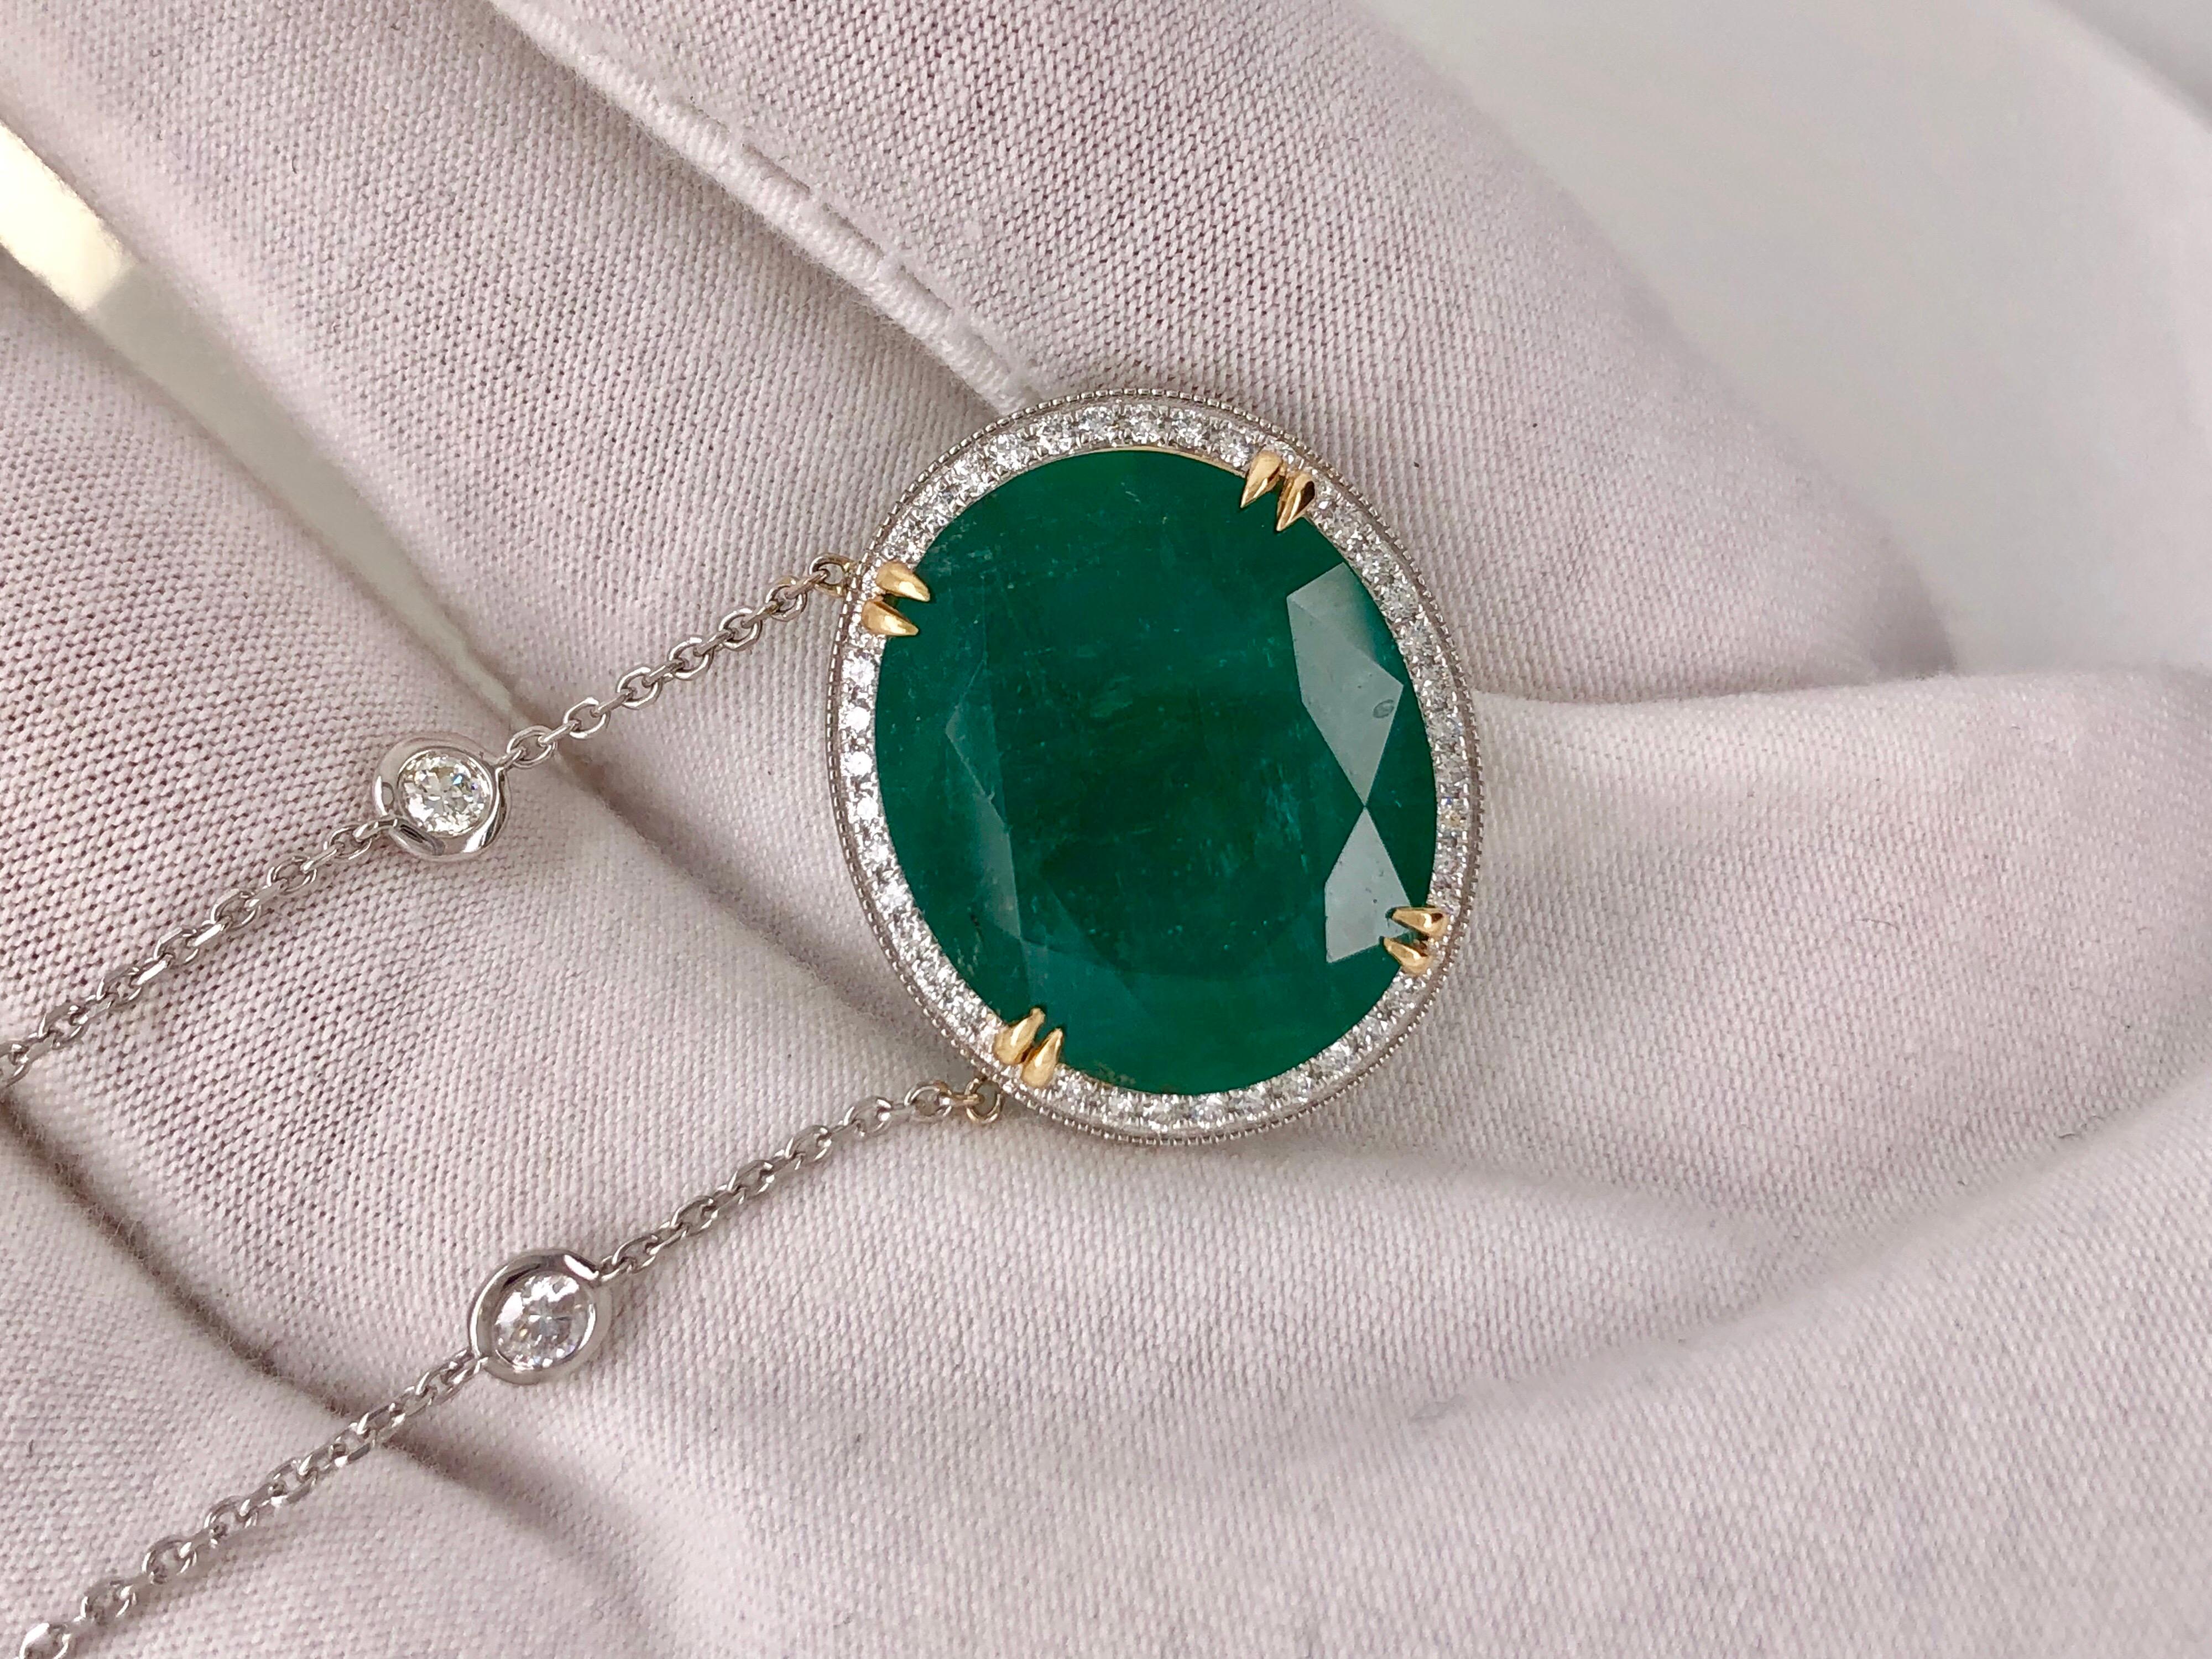 Oval Cut Emilio Jewelry GIA Certified 23.24 Carat Genuine Emerald Diamond Necklace